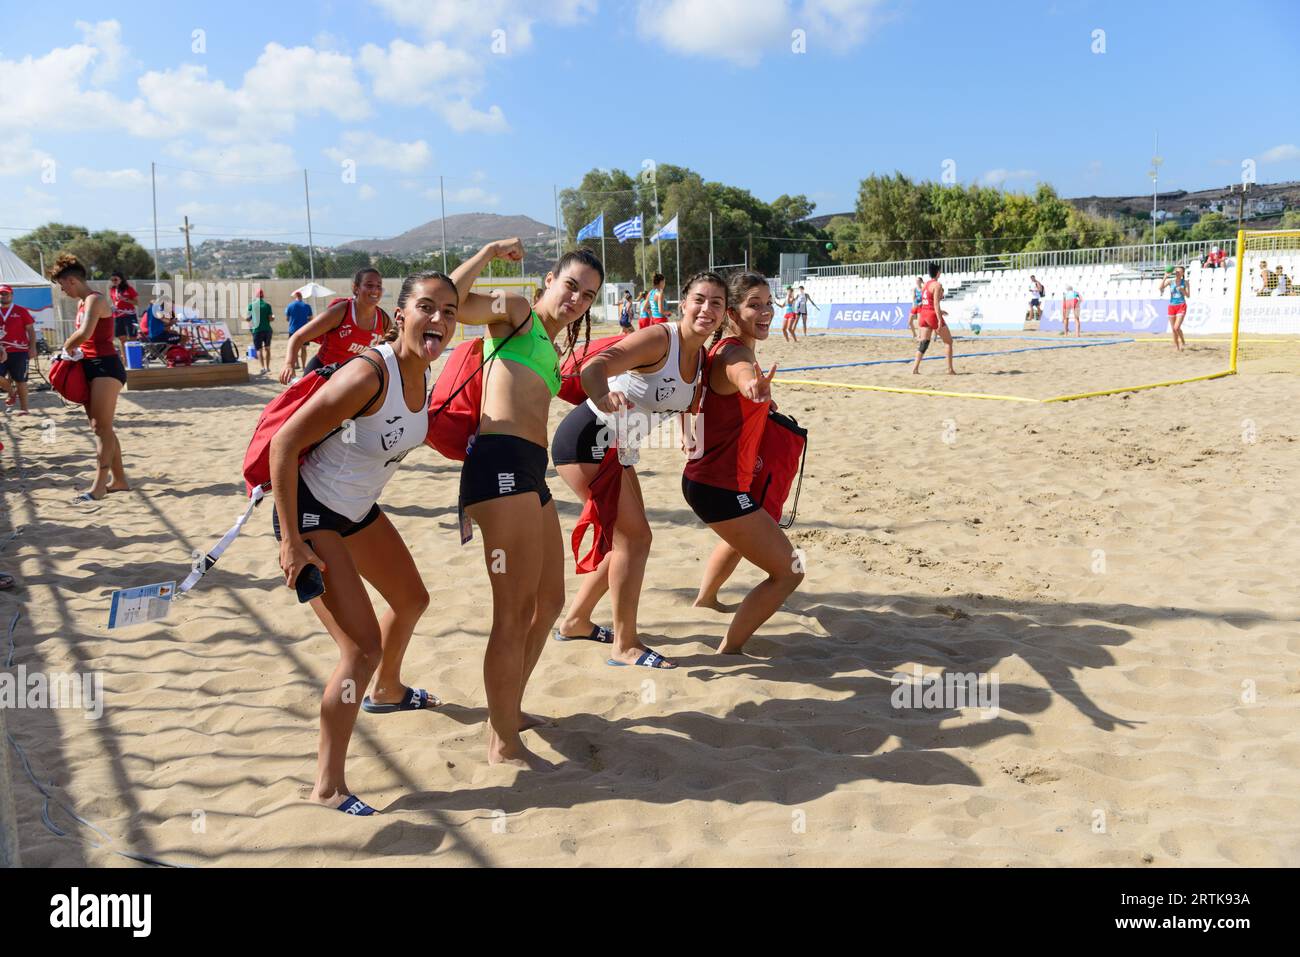 Equipa Portugal com 40 atletas nos Jogos do Mediterrâneo de Praia Heraklion  2023